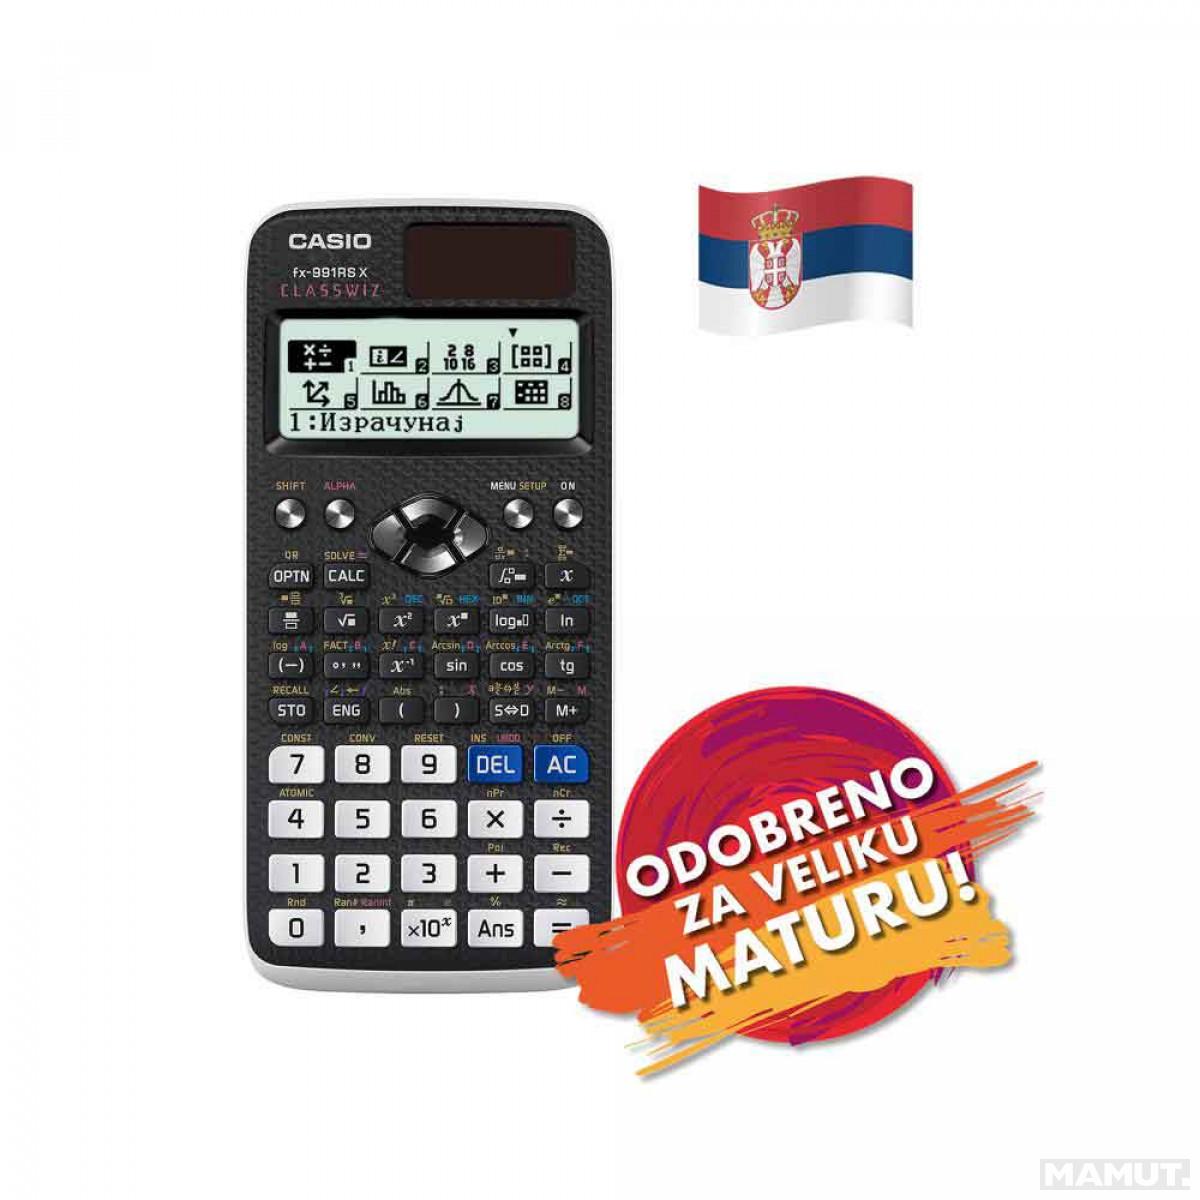 Provjeren ljubavni kalkulator blog.unrulymedia.com •